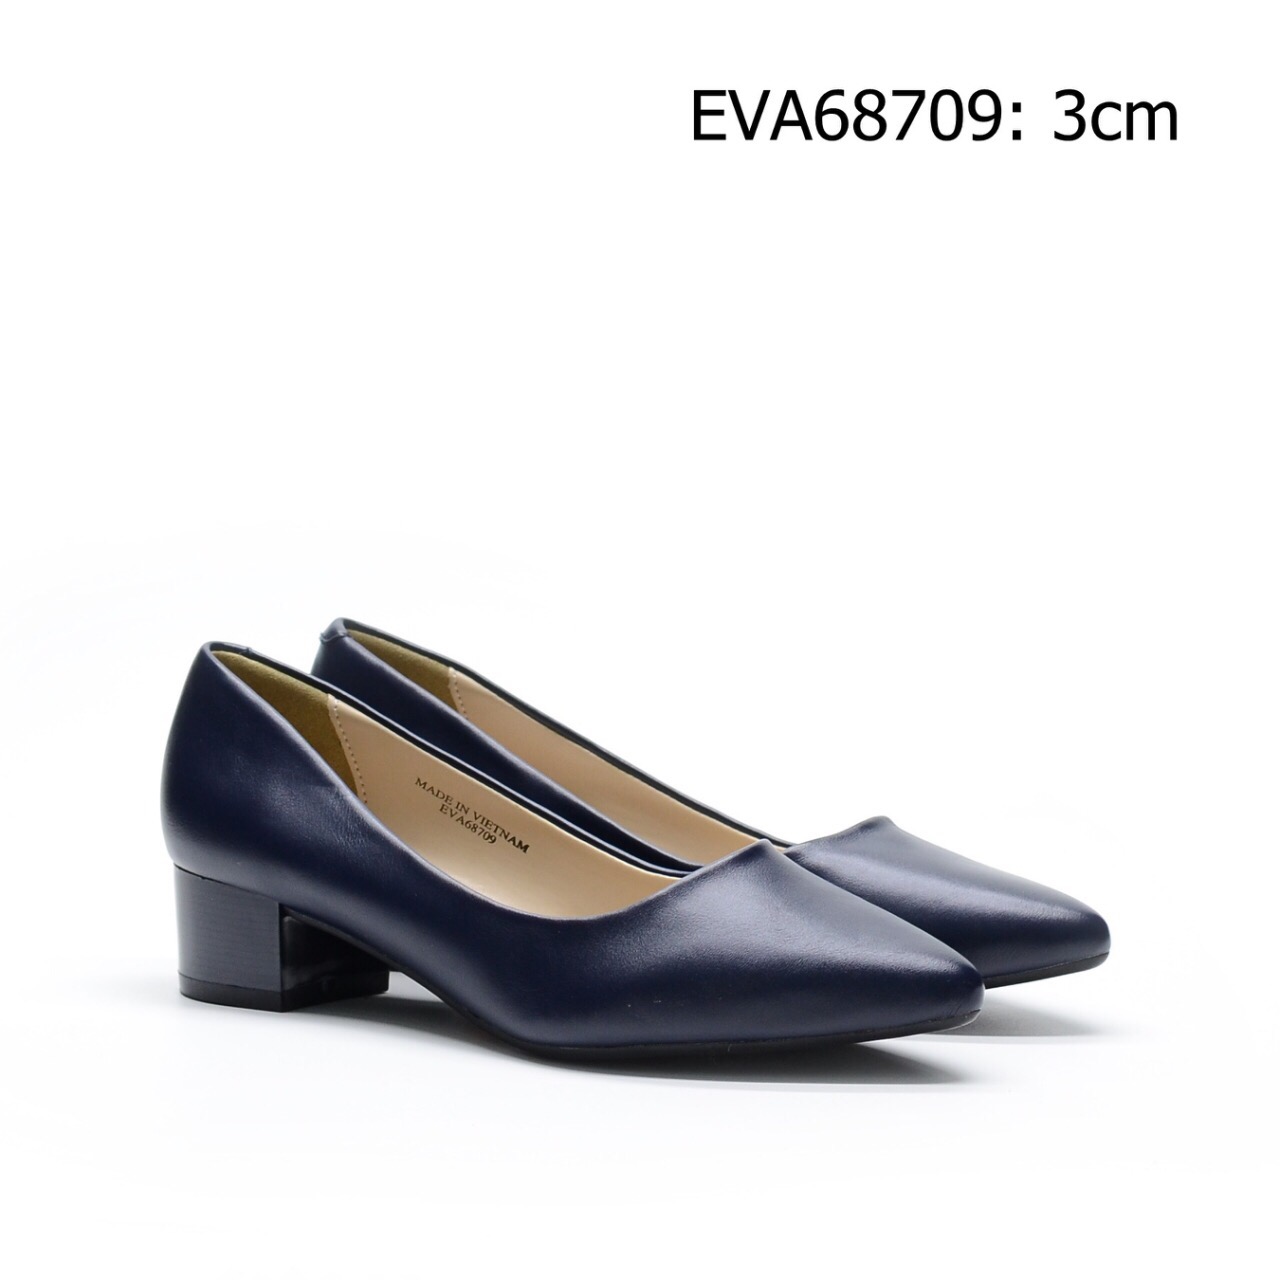 Giày nữ công sở đế vuông EVA68709 chất liệu da lì thanh lich, sang trọng